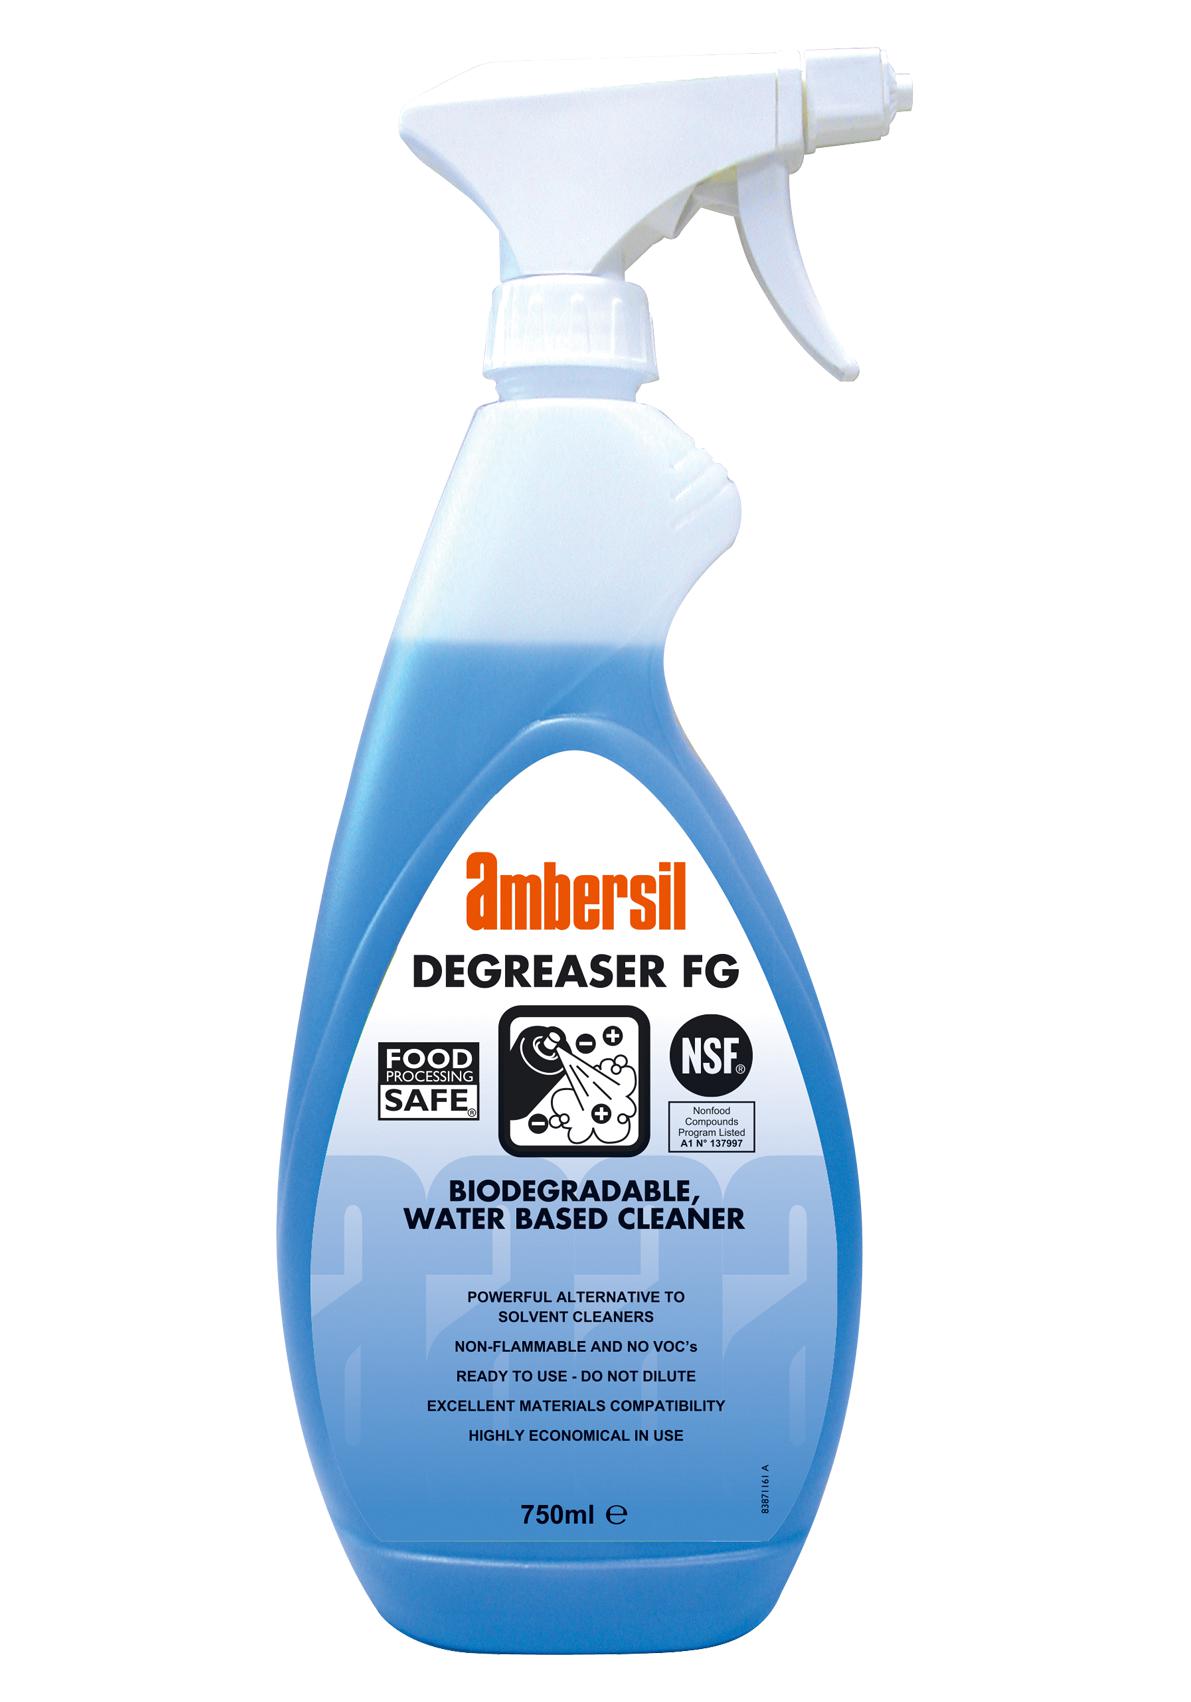 Ambersil Degreaser Fg, 750Ml Cleaner, Degreaser, Spray Bottle, 750Ml